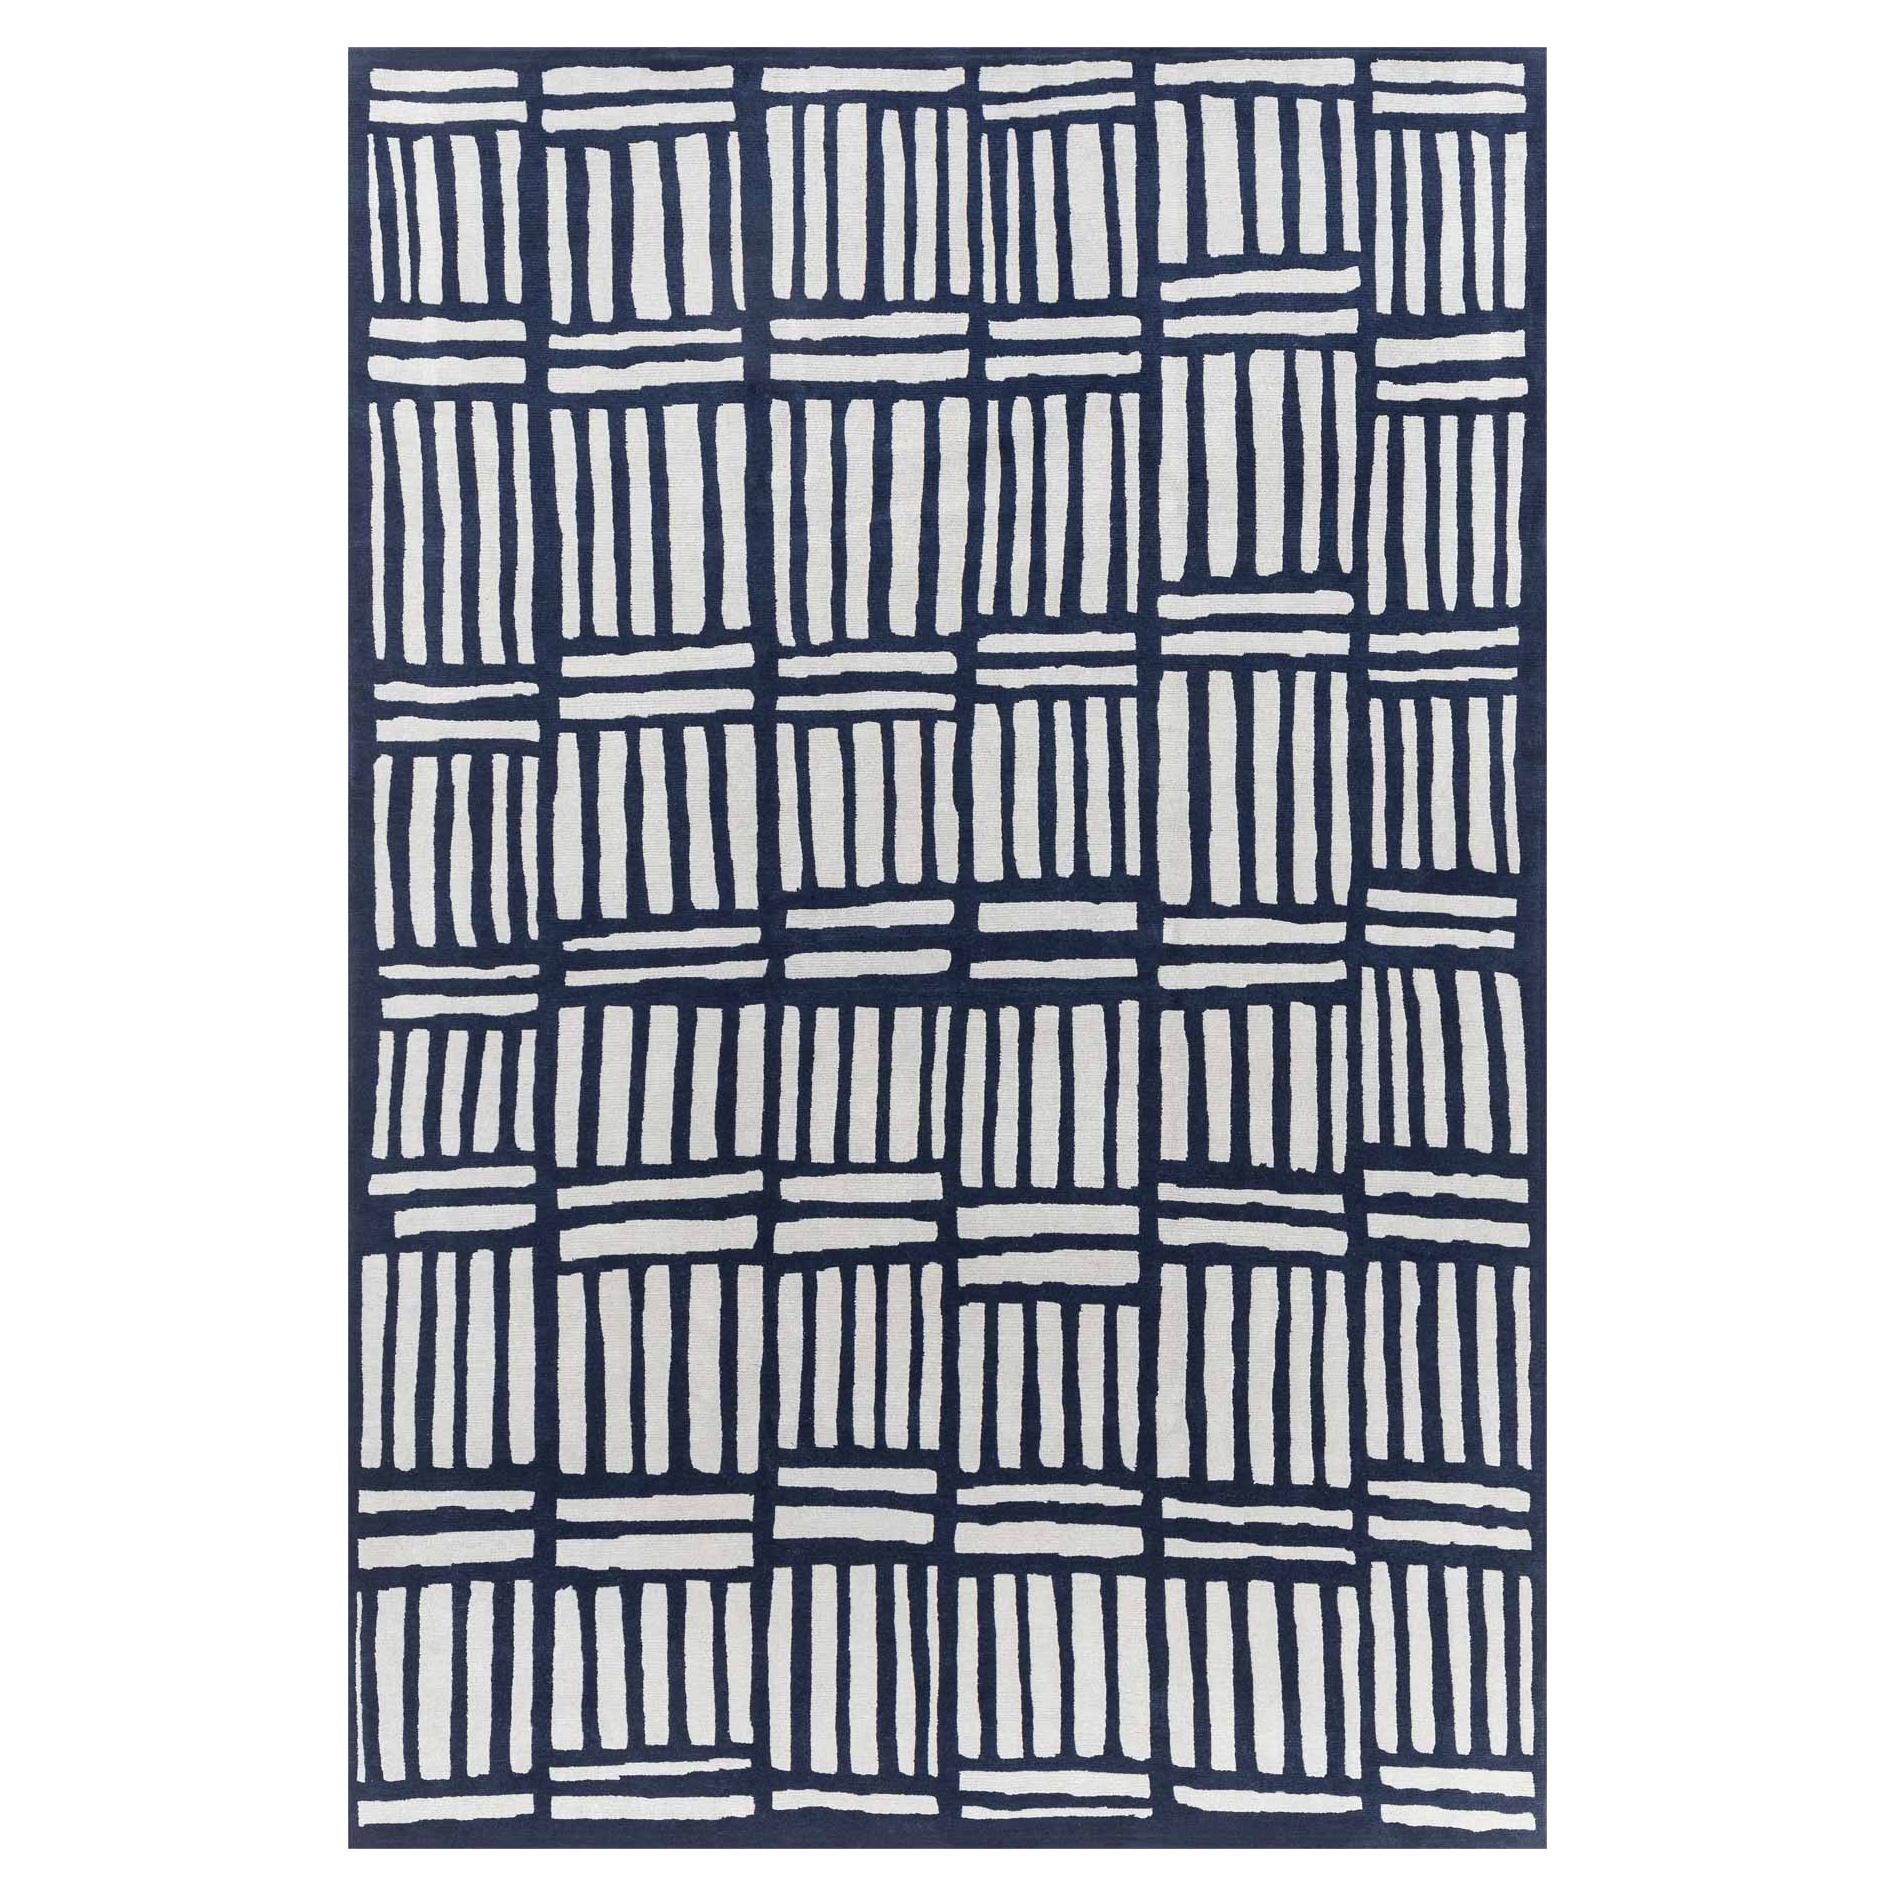 Tapis en laine GJS12 de George J. Sowden pour Post Design Collection/Memphis